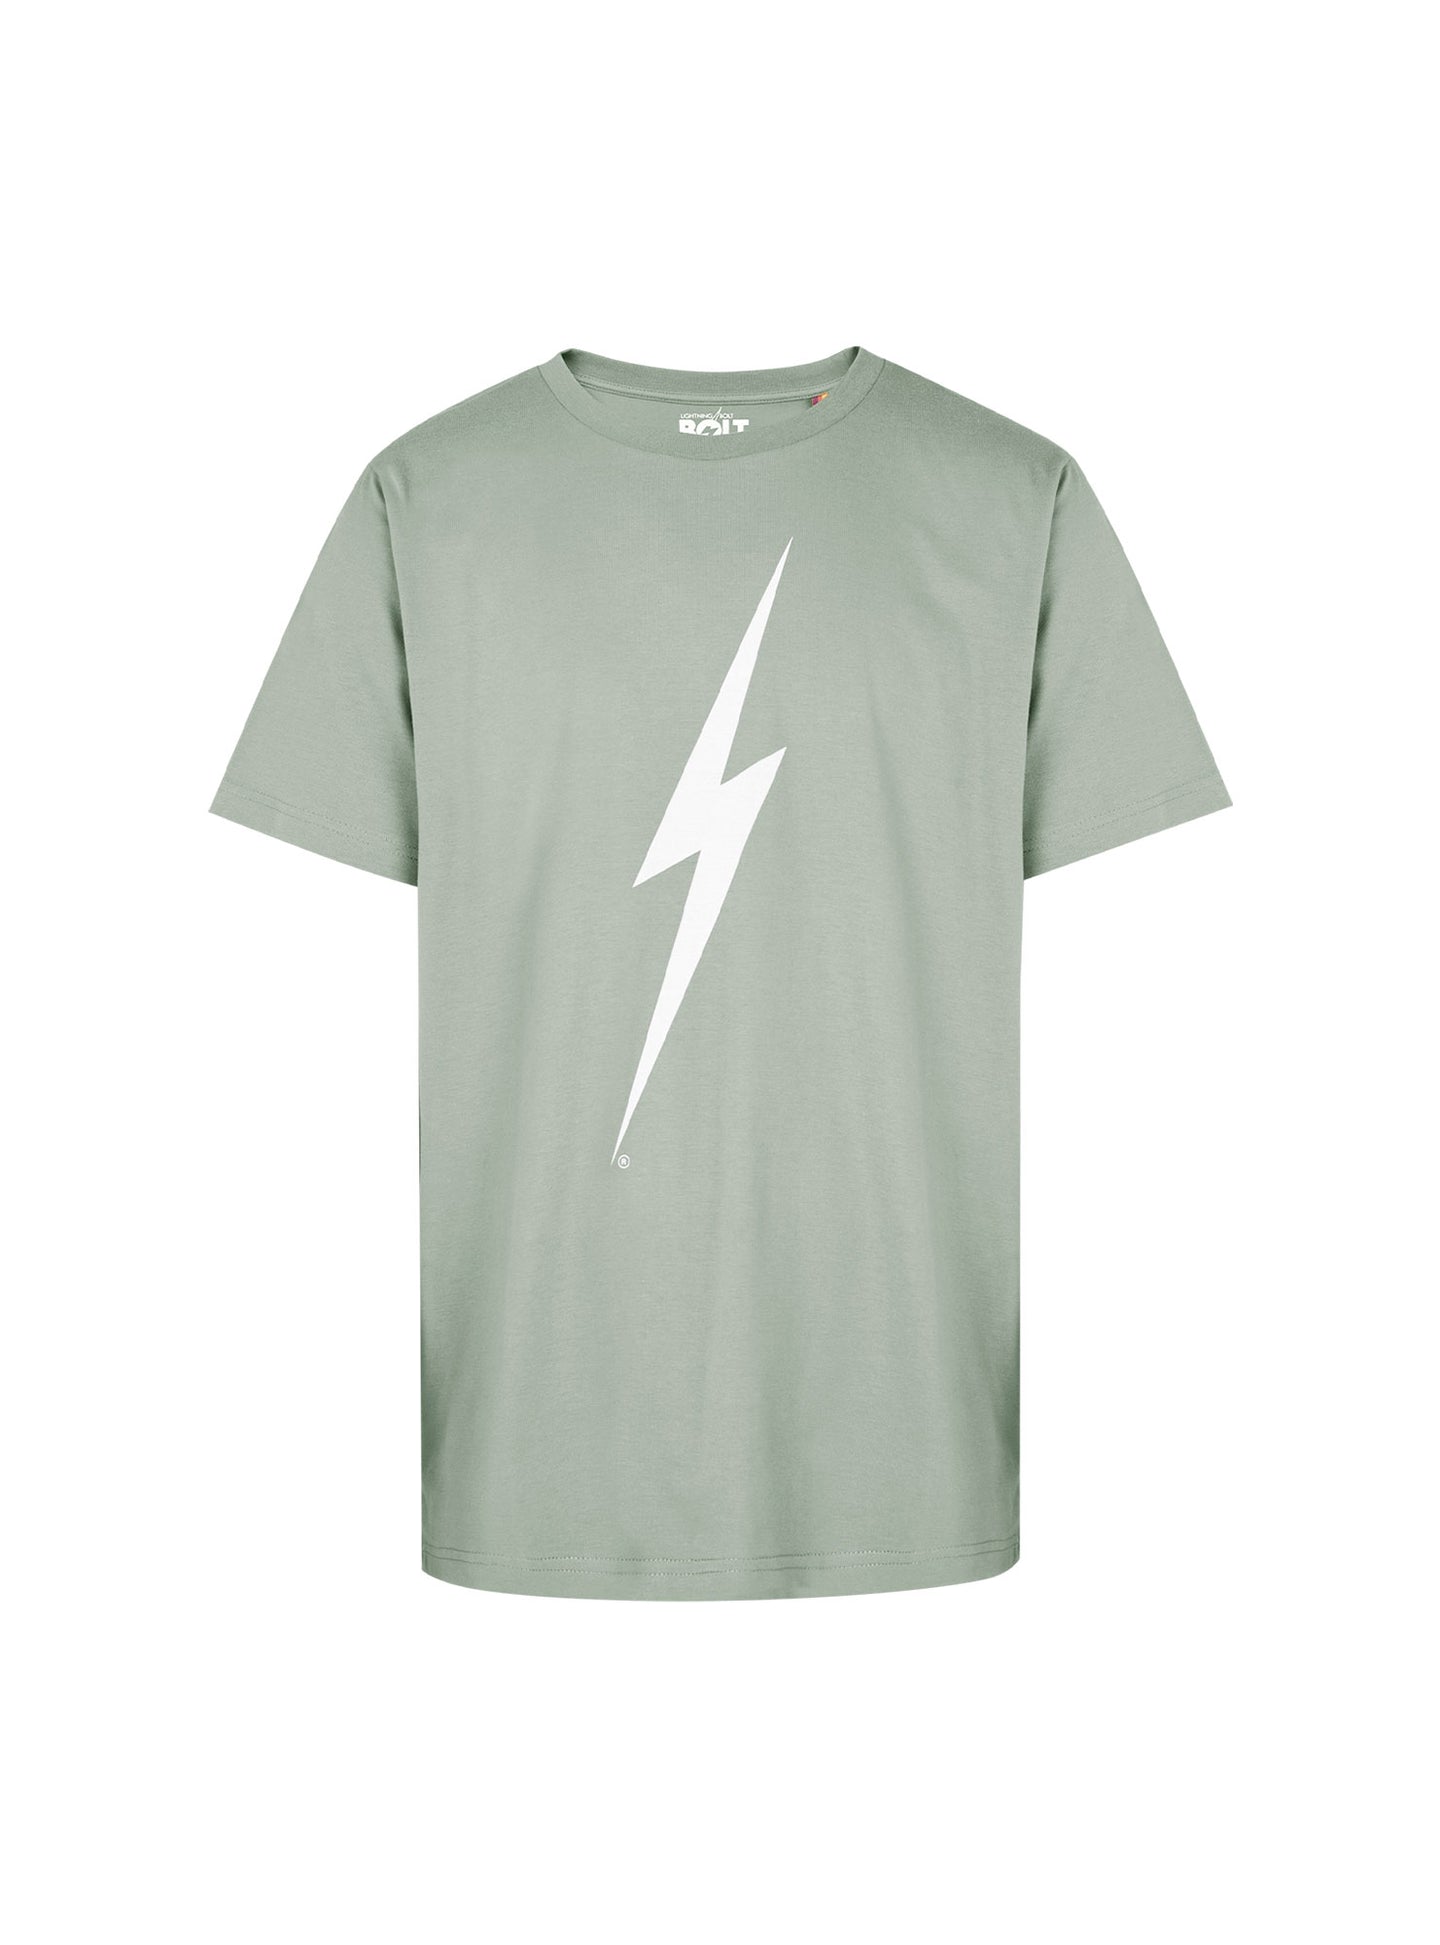 Camiseta De Manga Corta Lightning Bolt Forever Tee